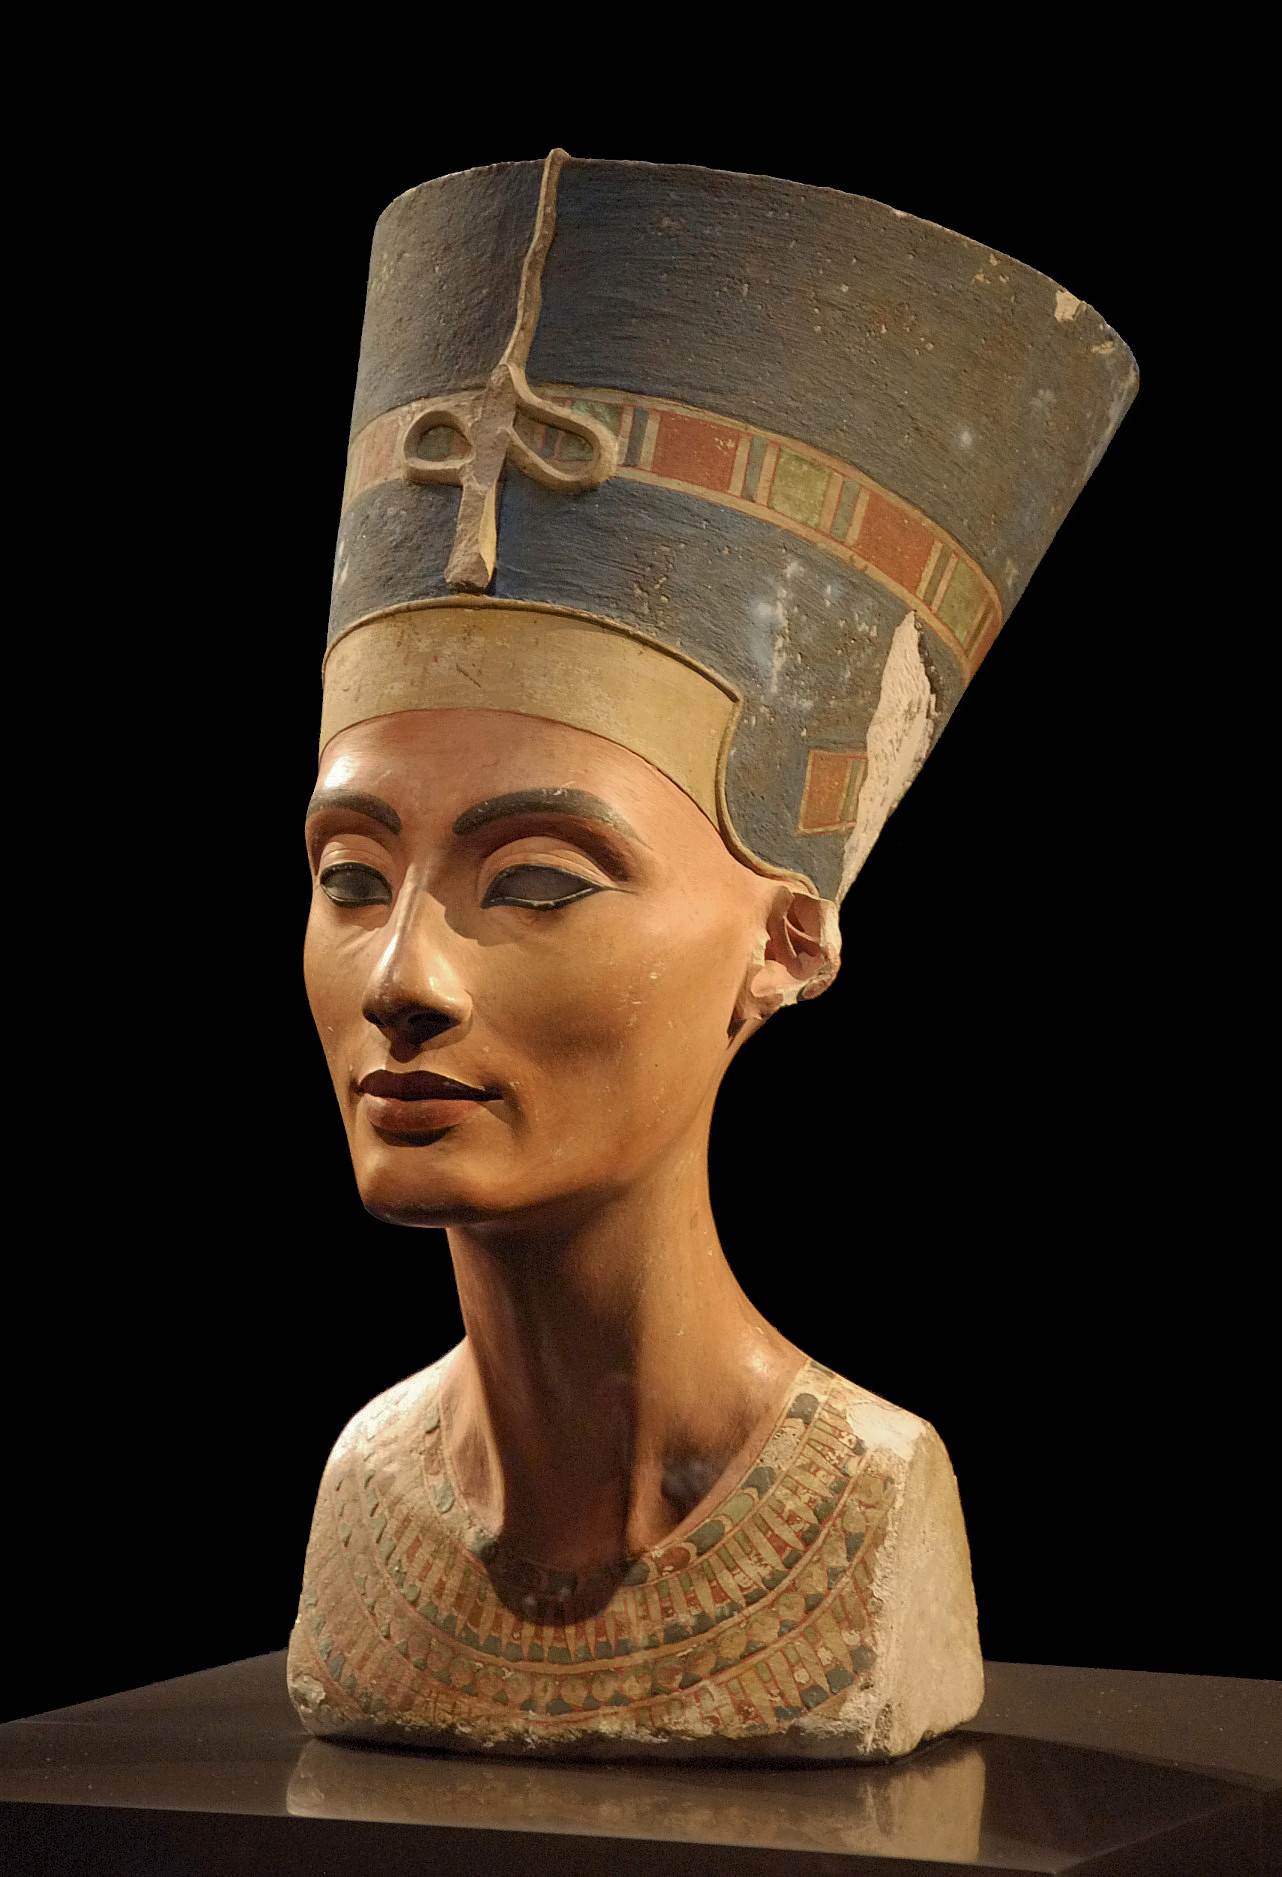 Immagine del busto di Nefertiti, scoperto nella capitale di Akhenaton, Amarna, il 6 dicembre 1912. Il busto si trova al Neues Museum di Berlino.